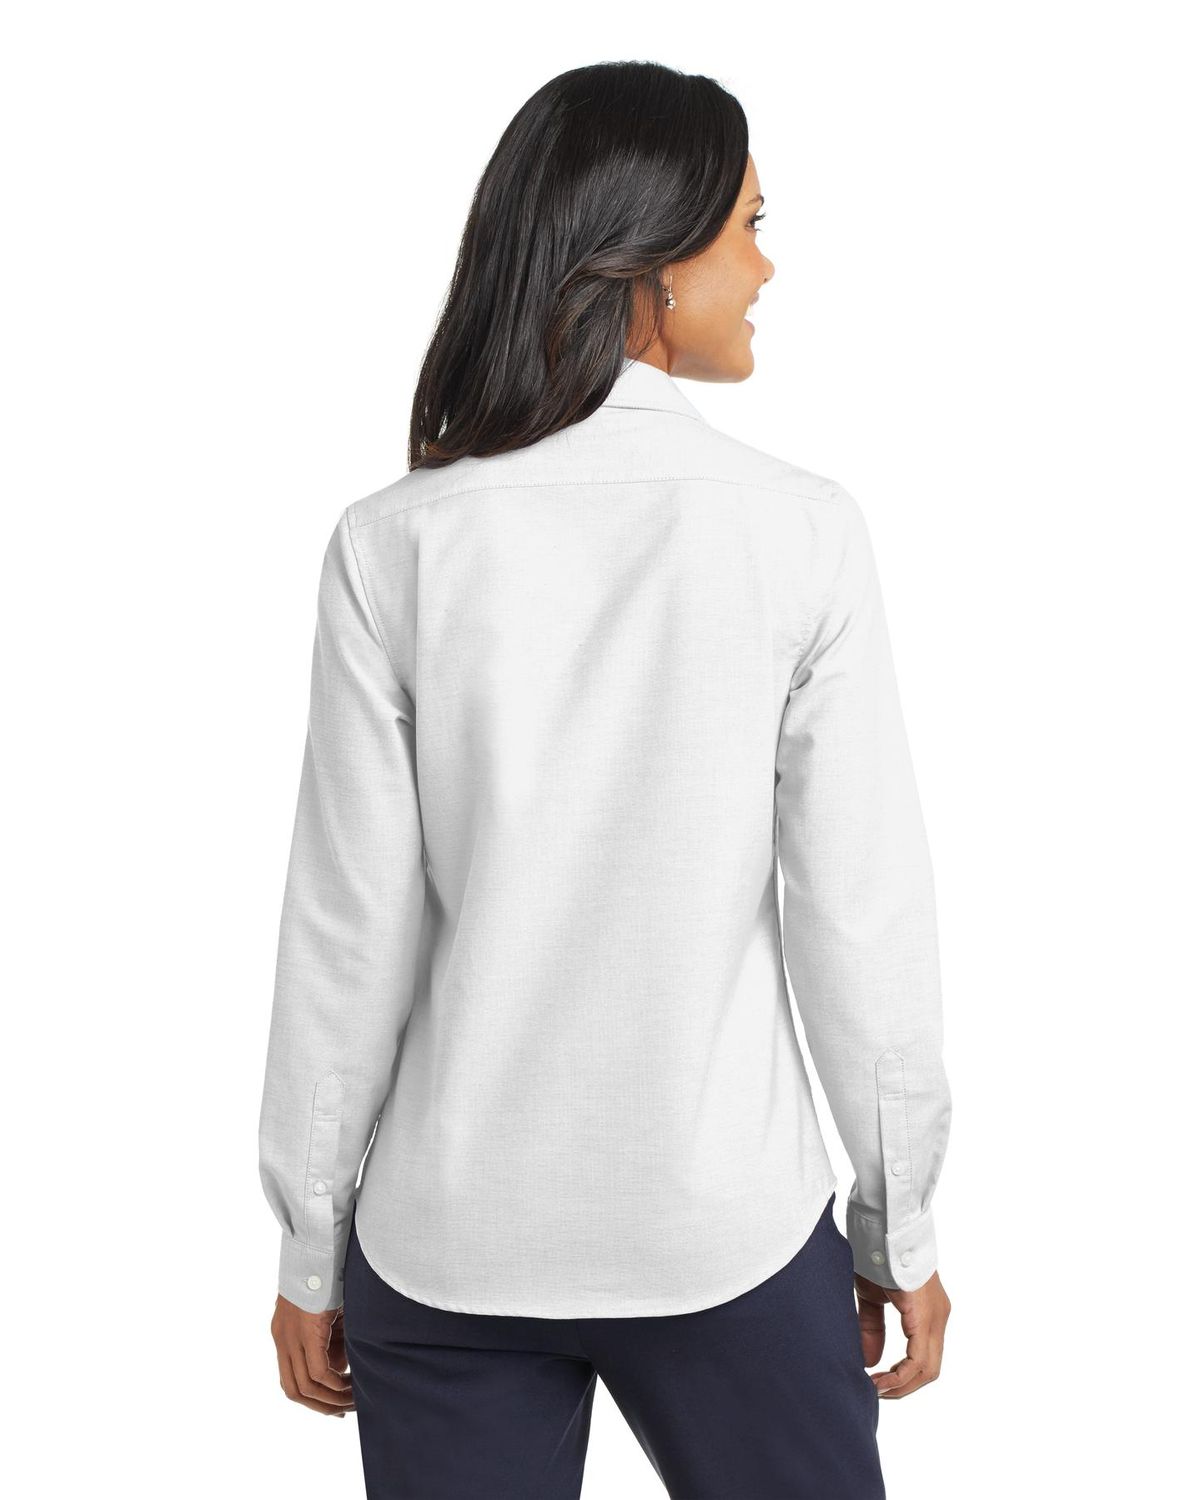 'Port Authority L658 women’s Cotton/Poly  Super Pro Oxford Shirt'